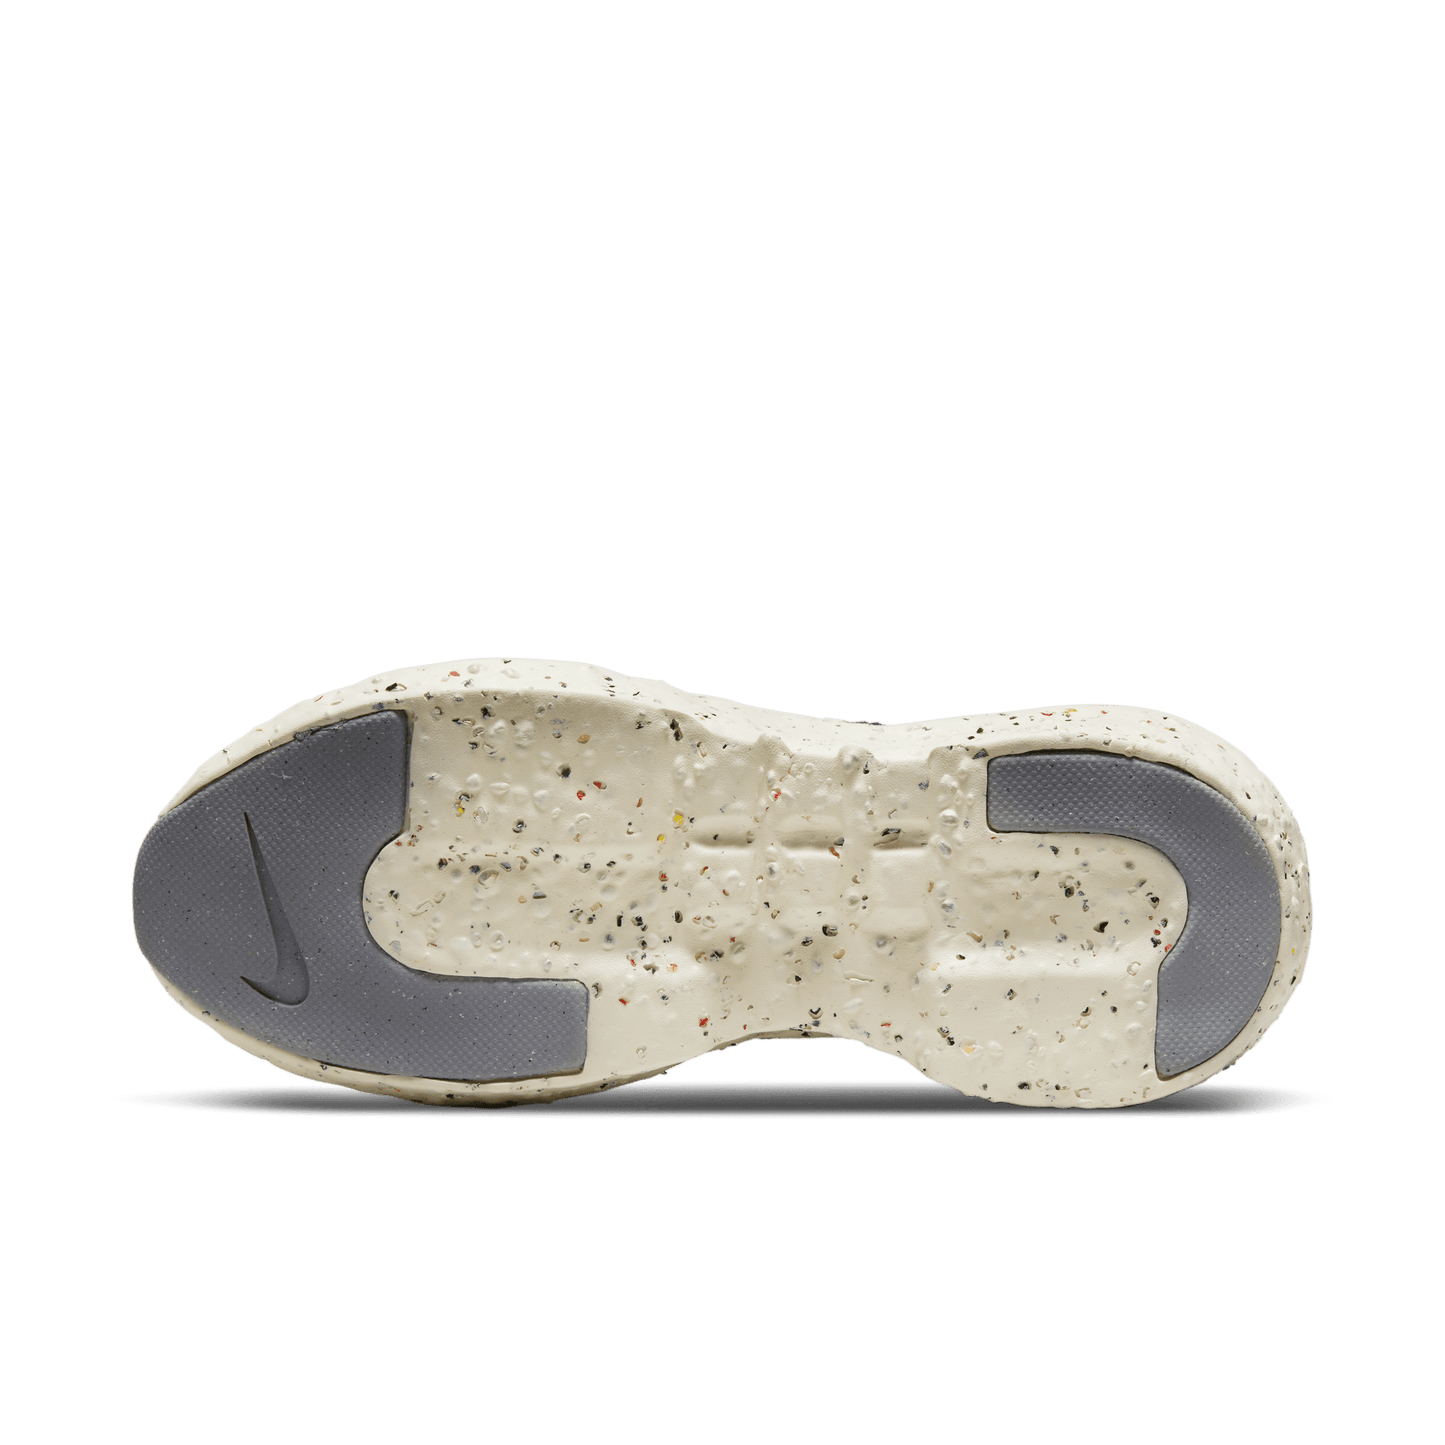 Nike Crater Impact SE